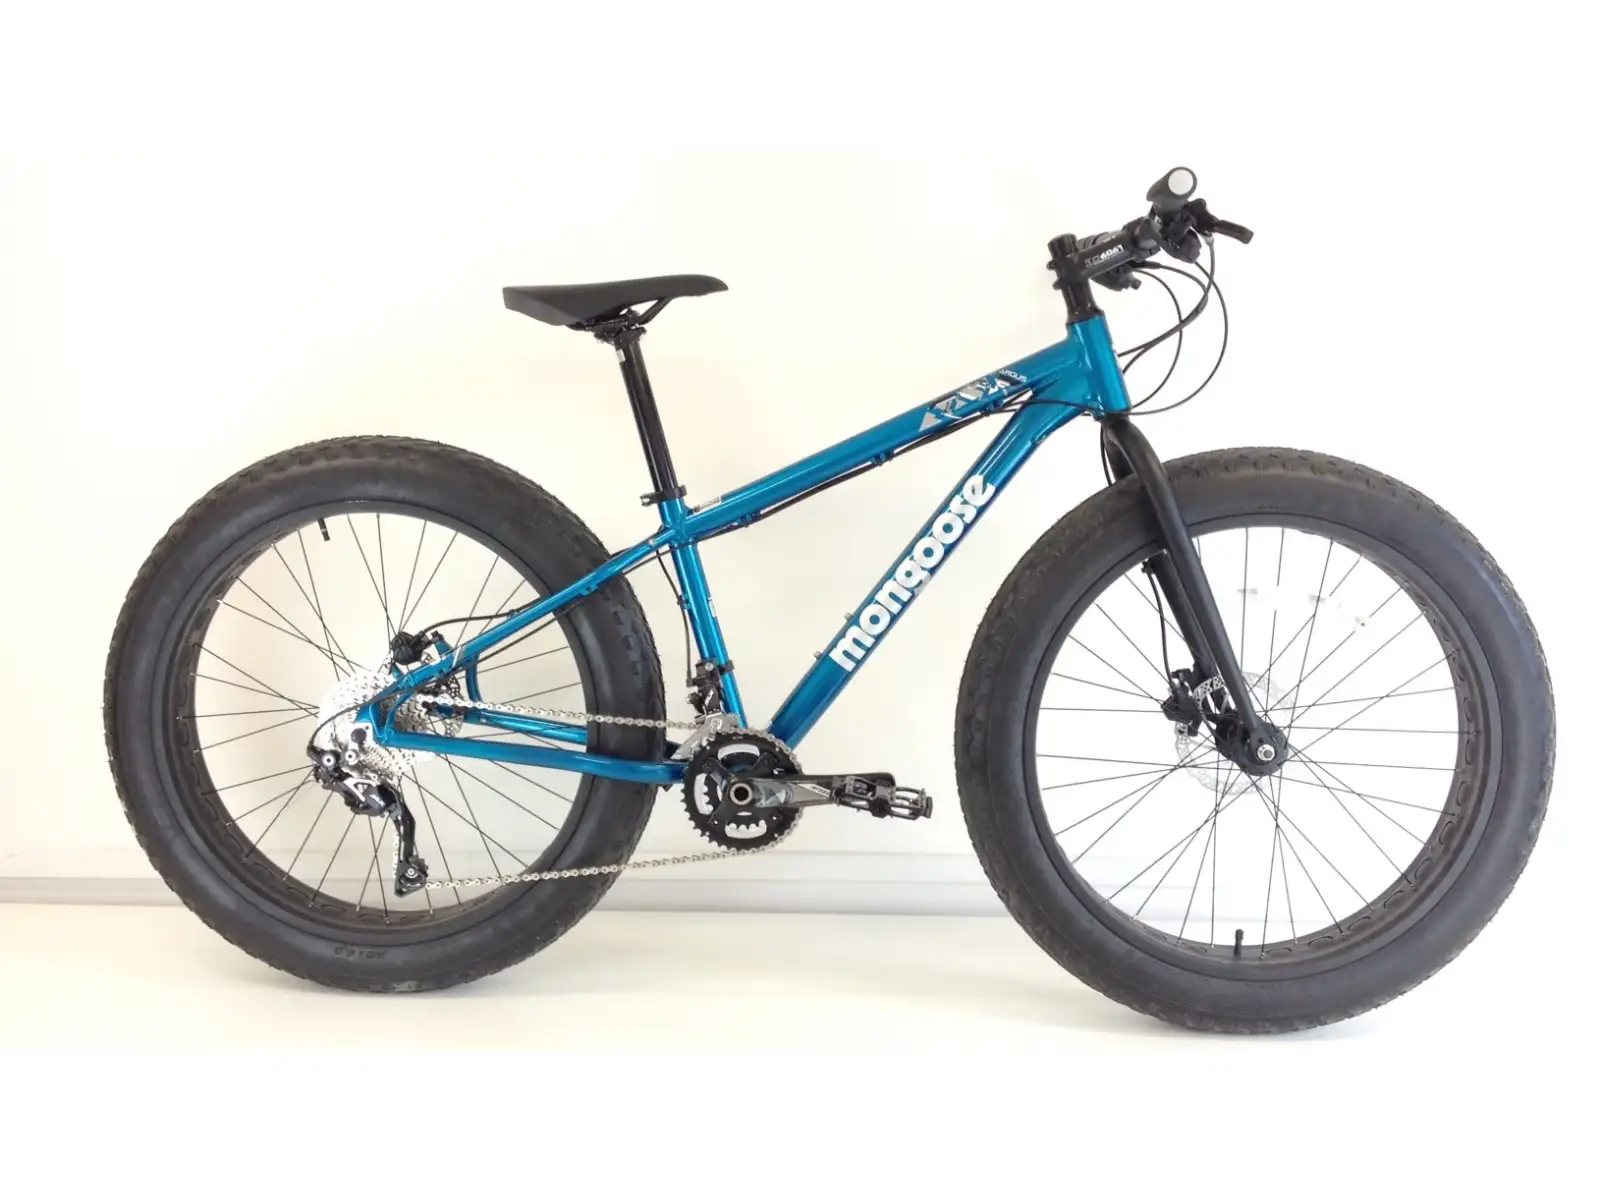 Mongoose Argus Fat bike 2015 PREVIOUS II, veľkosť 1,5 mm, v. S